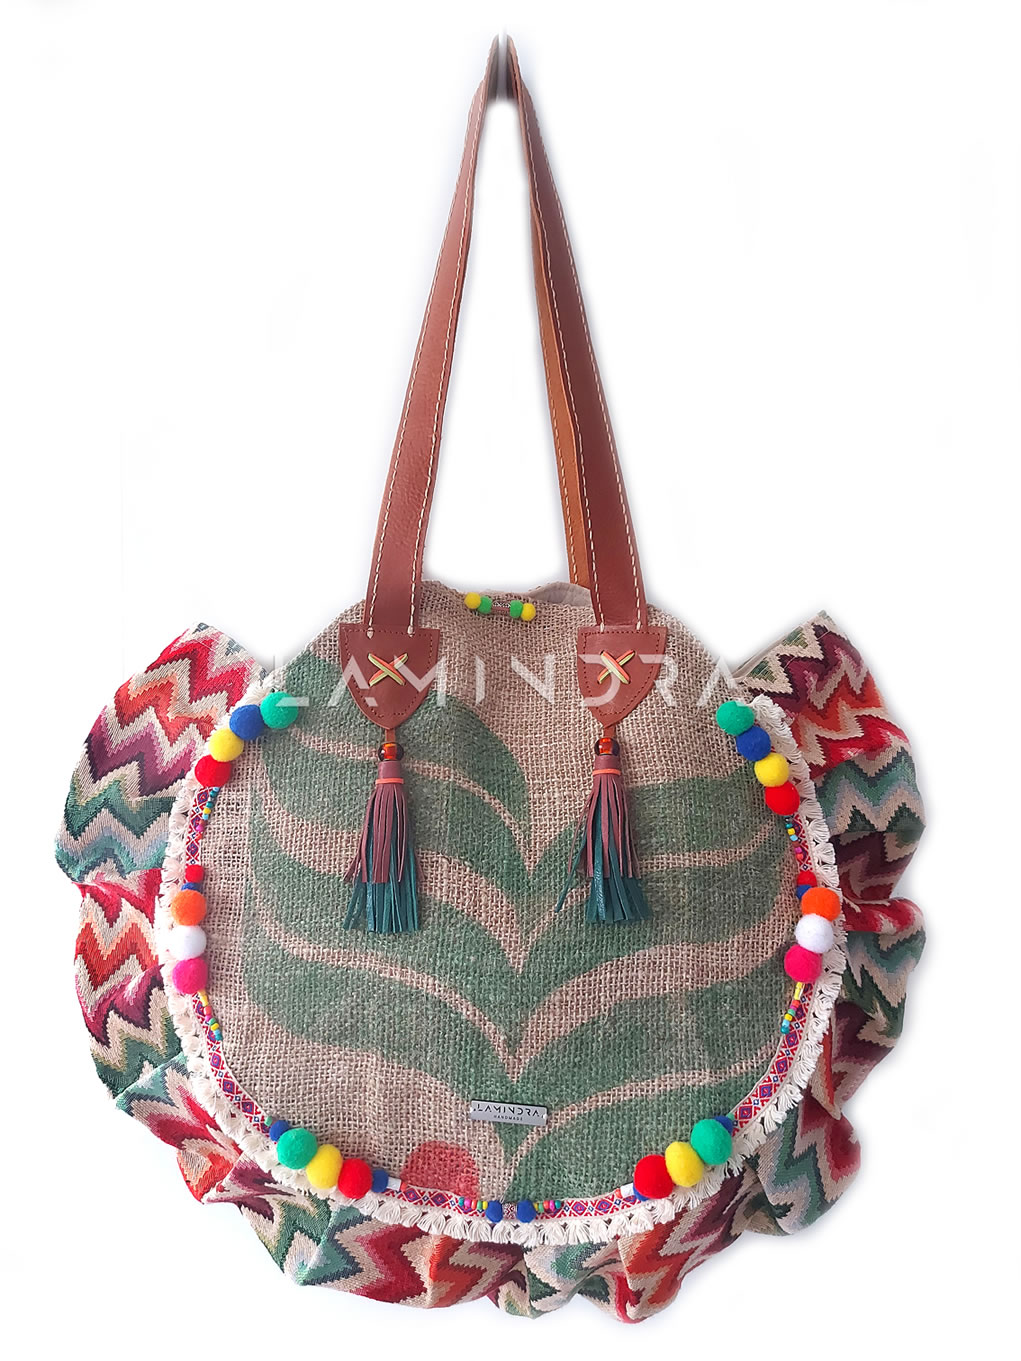 Táskák, hátizsákok, kézműves termékek: TA029, Boho Coffee Shopper – XXL táska